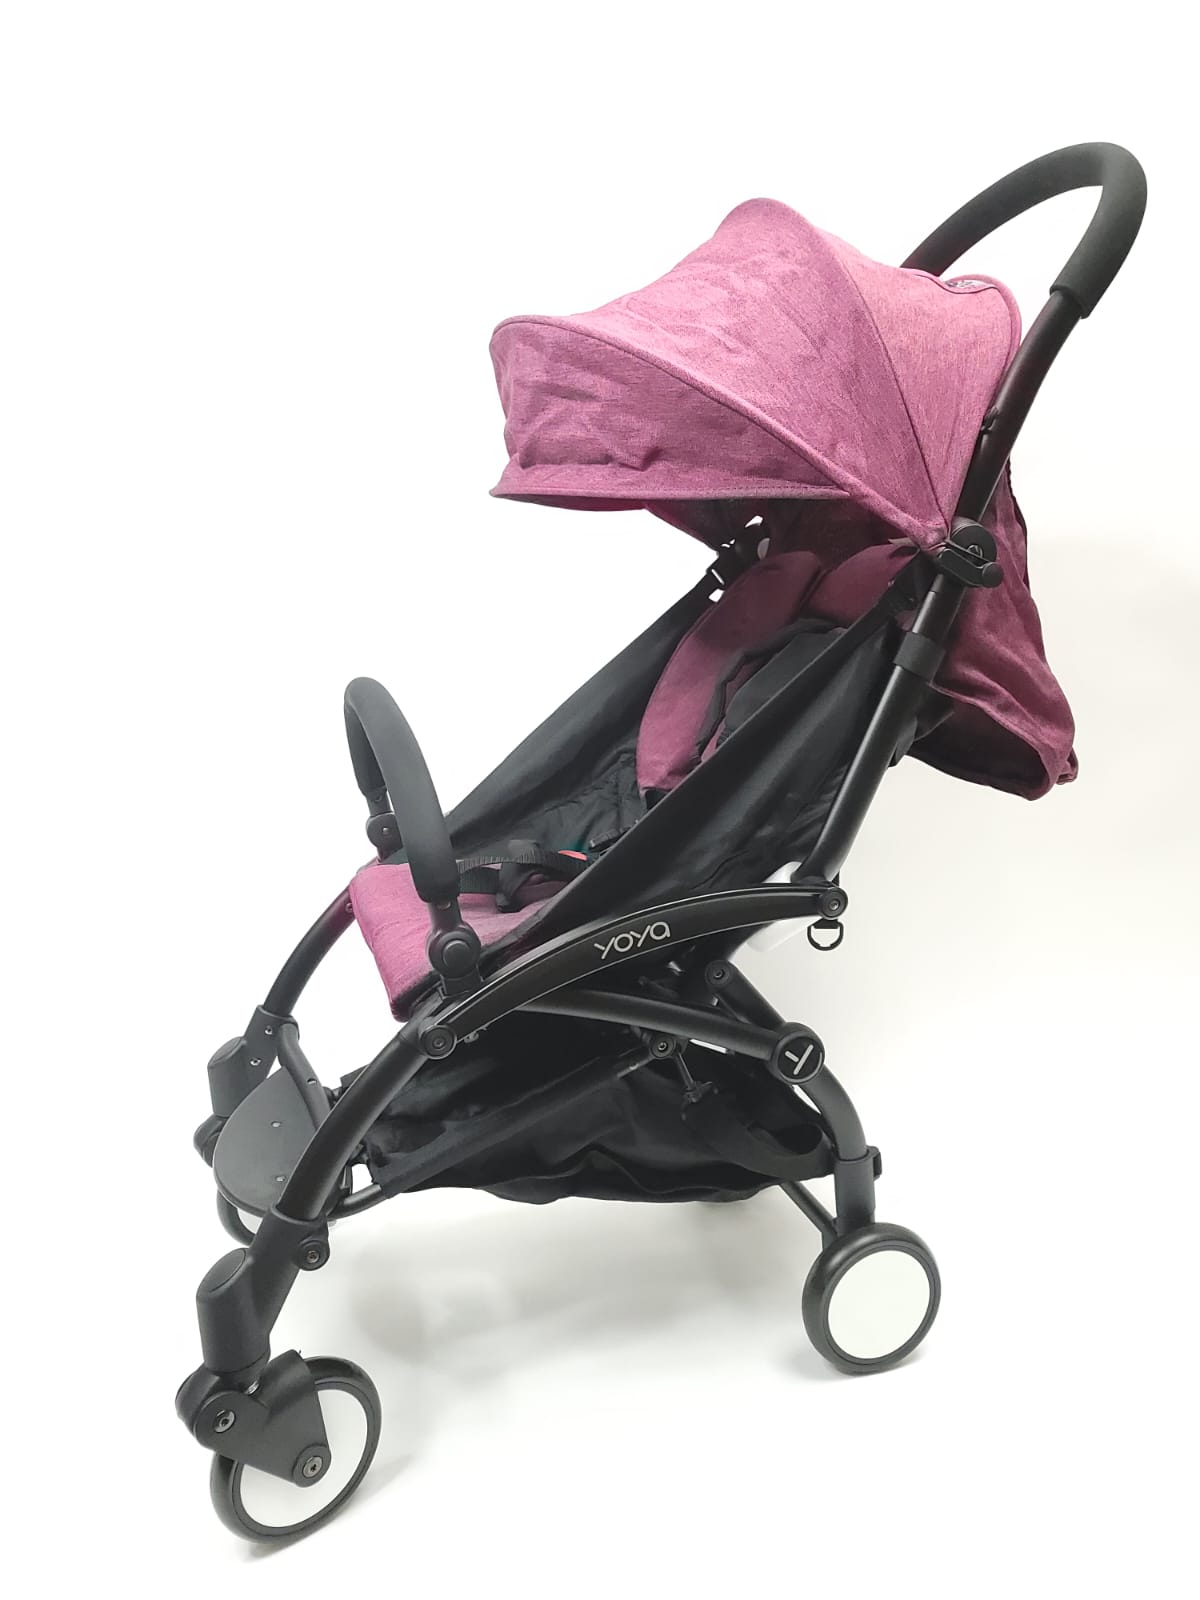 Продажа детской коляски Yoya 175, цвет фиолетовый, состояние: новая вещь. Тест-драйв и доставка по России.